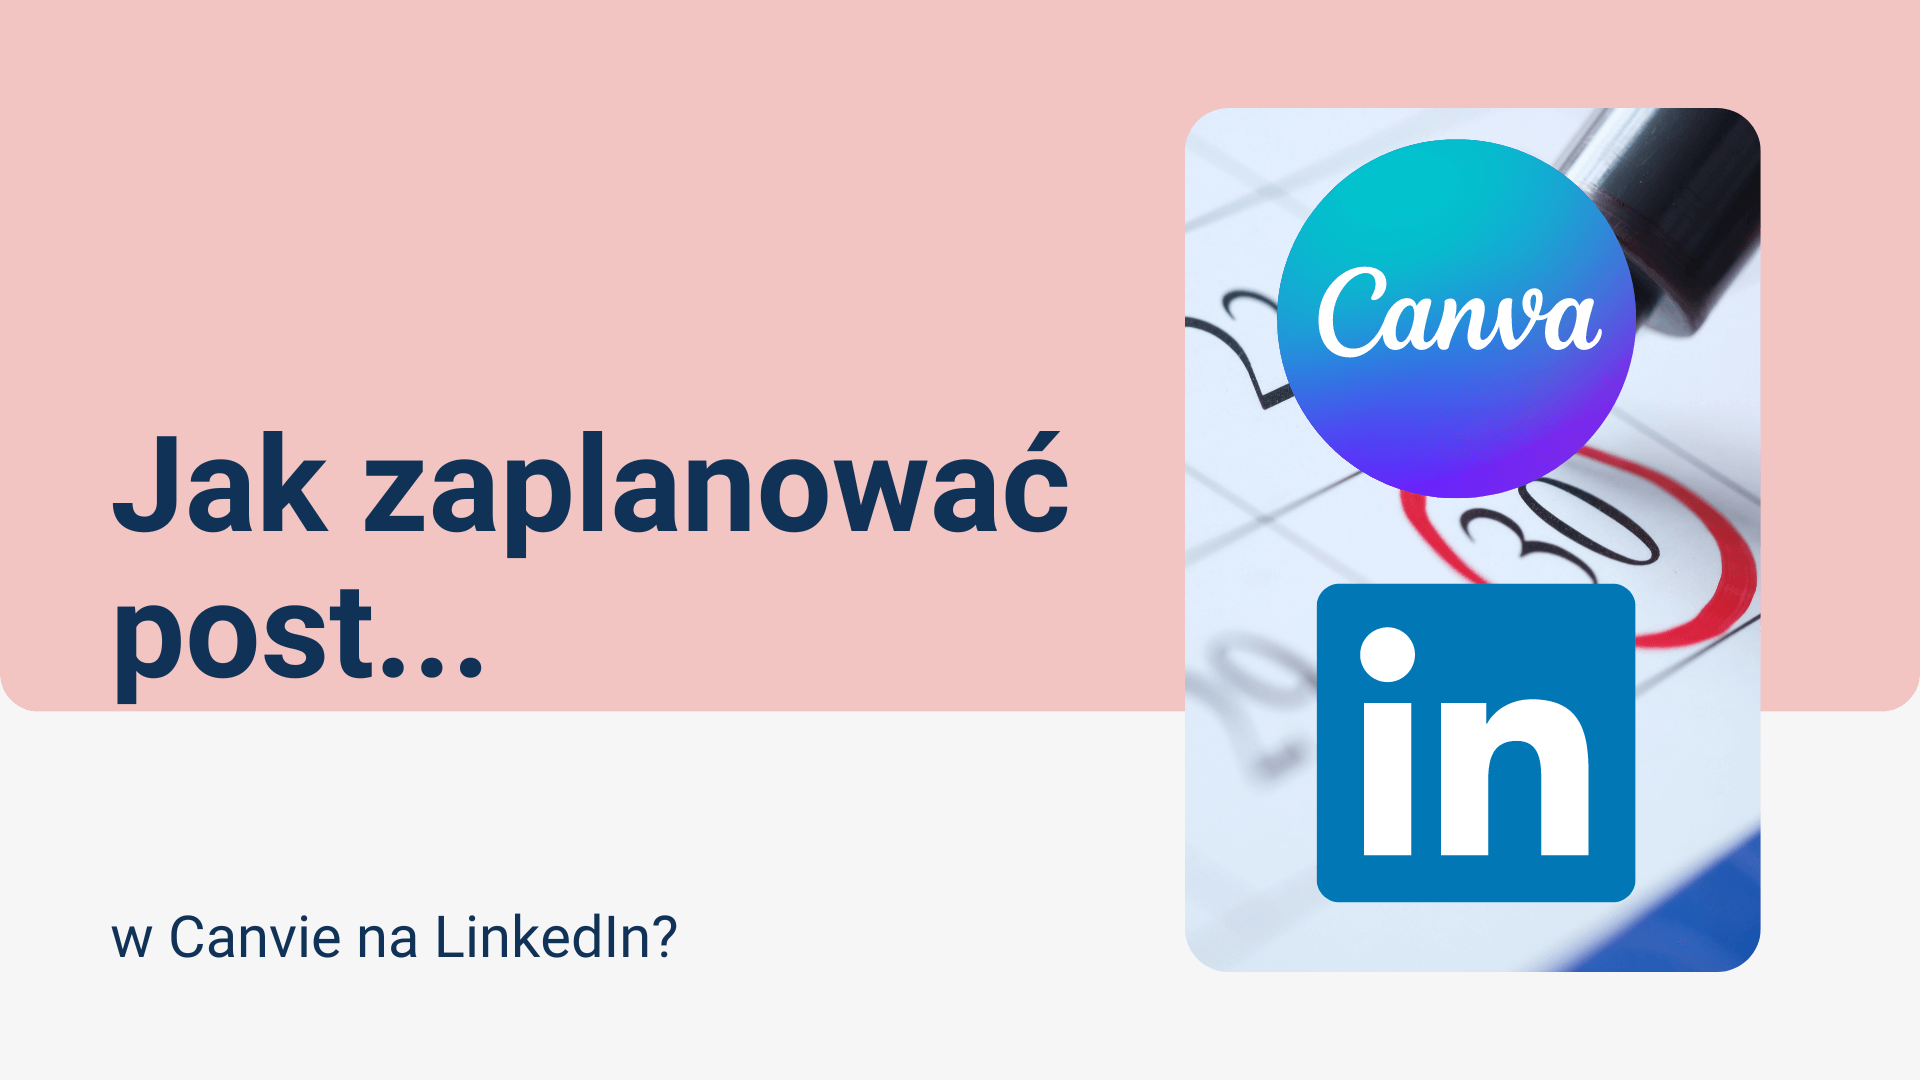 You are currently viewing Jak zaplanować post w Canva na LinkedIn (mając opcję PRO)?